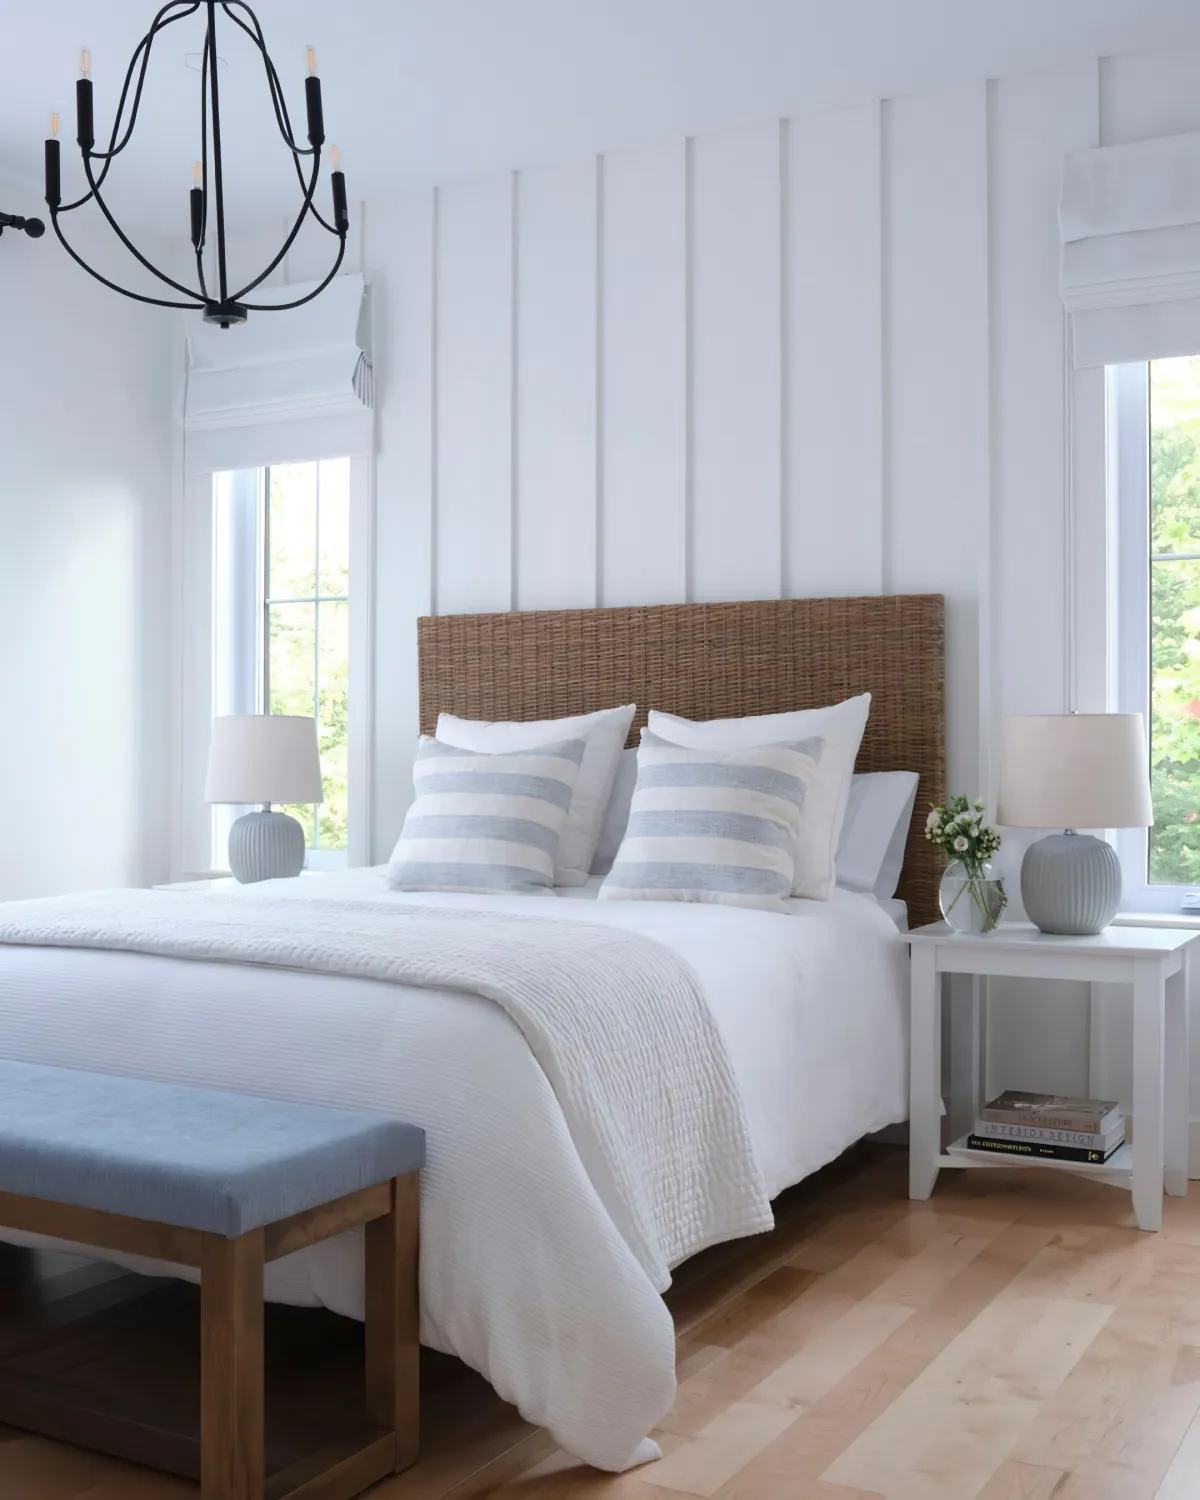 murs en blanc banc en bois et bleu tete de lit en rotin